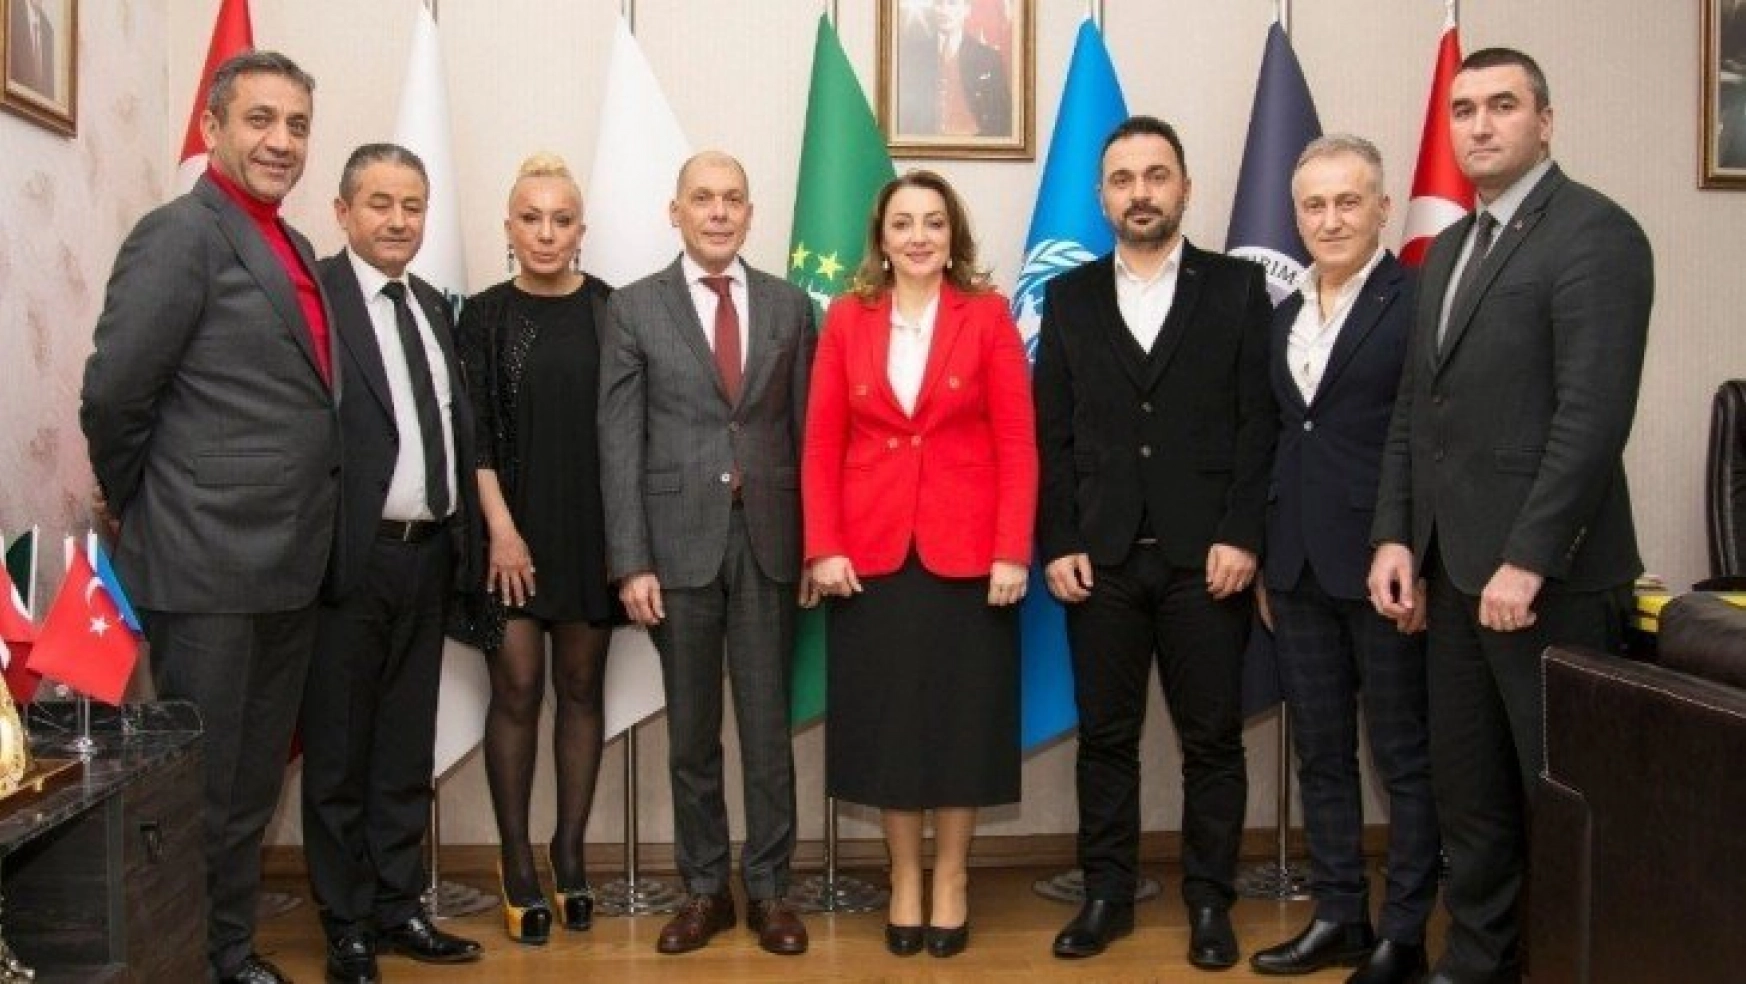 Büyükelçi Mastropietro: '2020 yılında ULUSKON ile iş birliği kararı aldık'